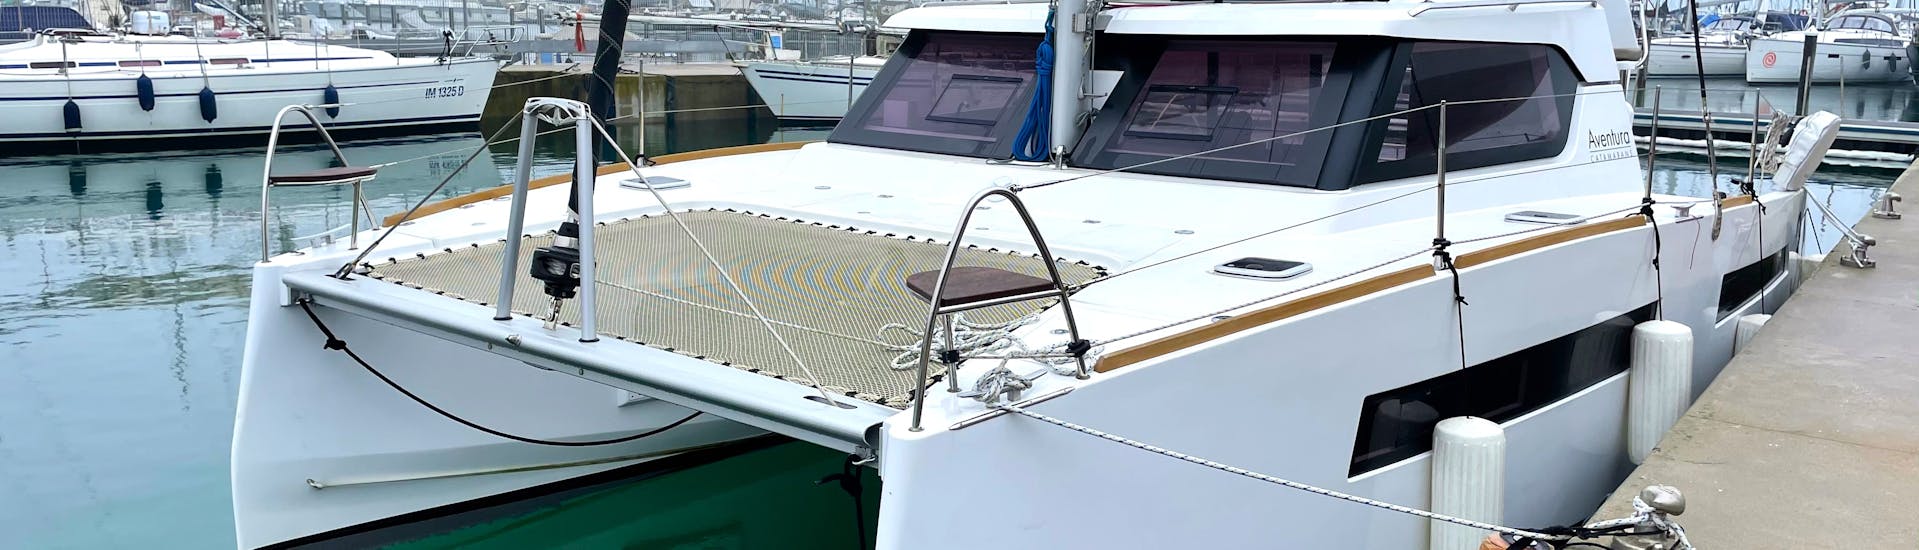 Foto van één van de catamarans gebruikt voor de privé catamaran trip naar de zeegrotten van Polignano a Mare met Rent Me Charter.